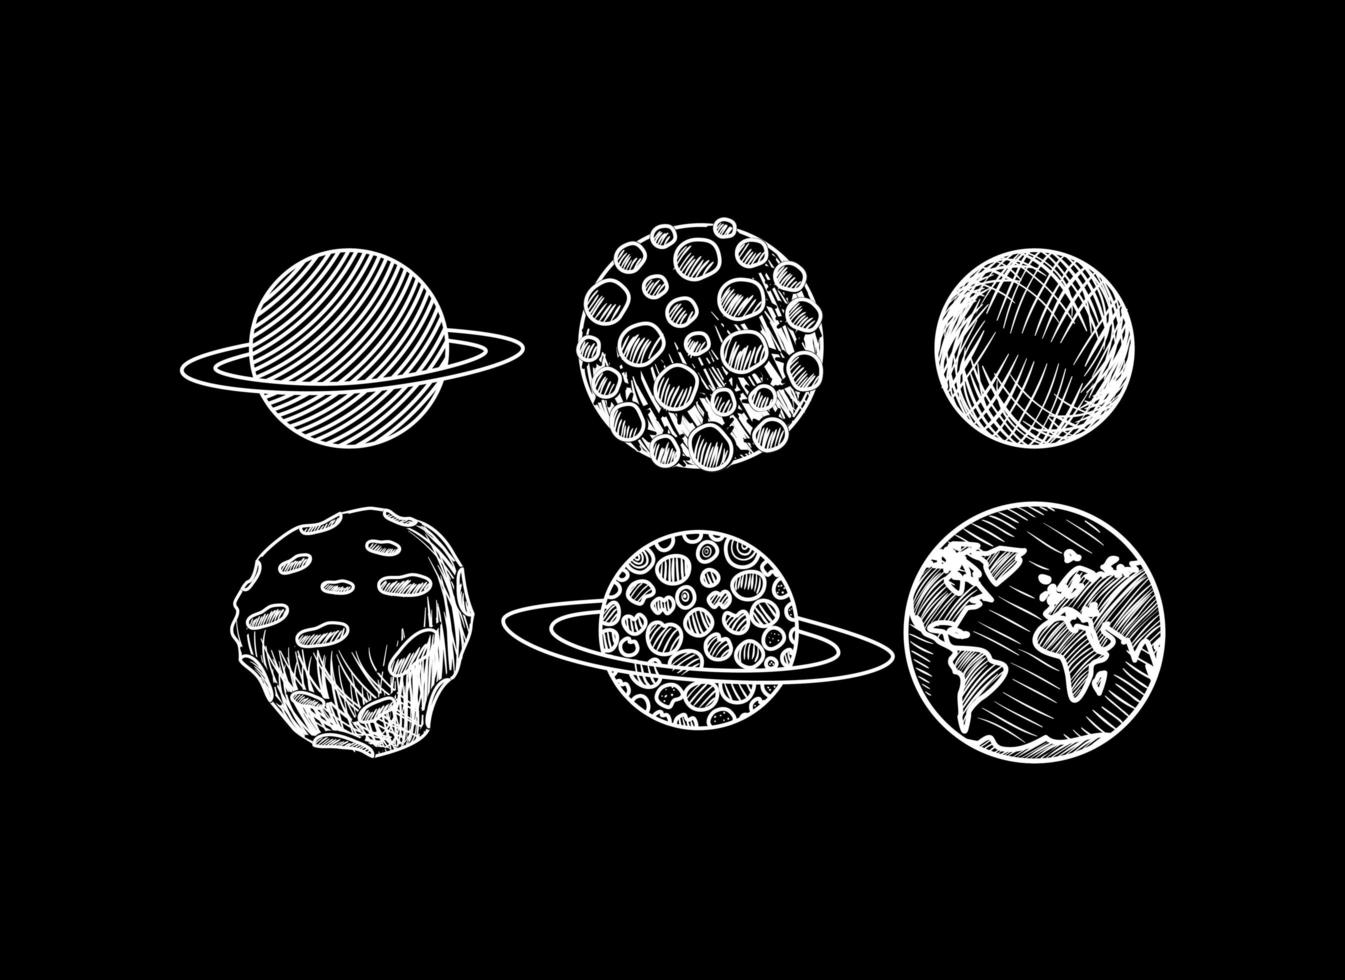 planetas desenhados à mão do projeto do sistema solar vetor